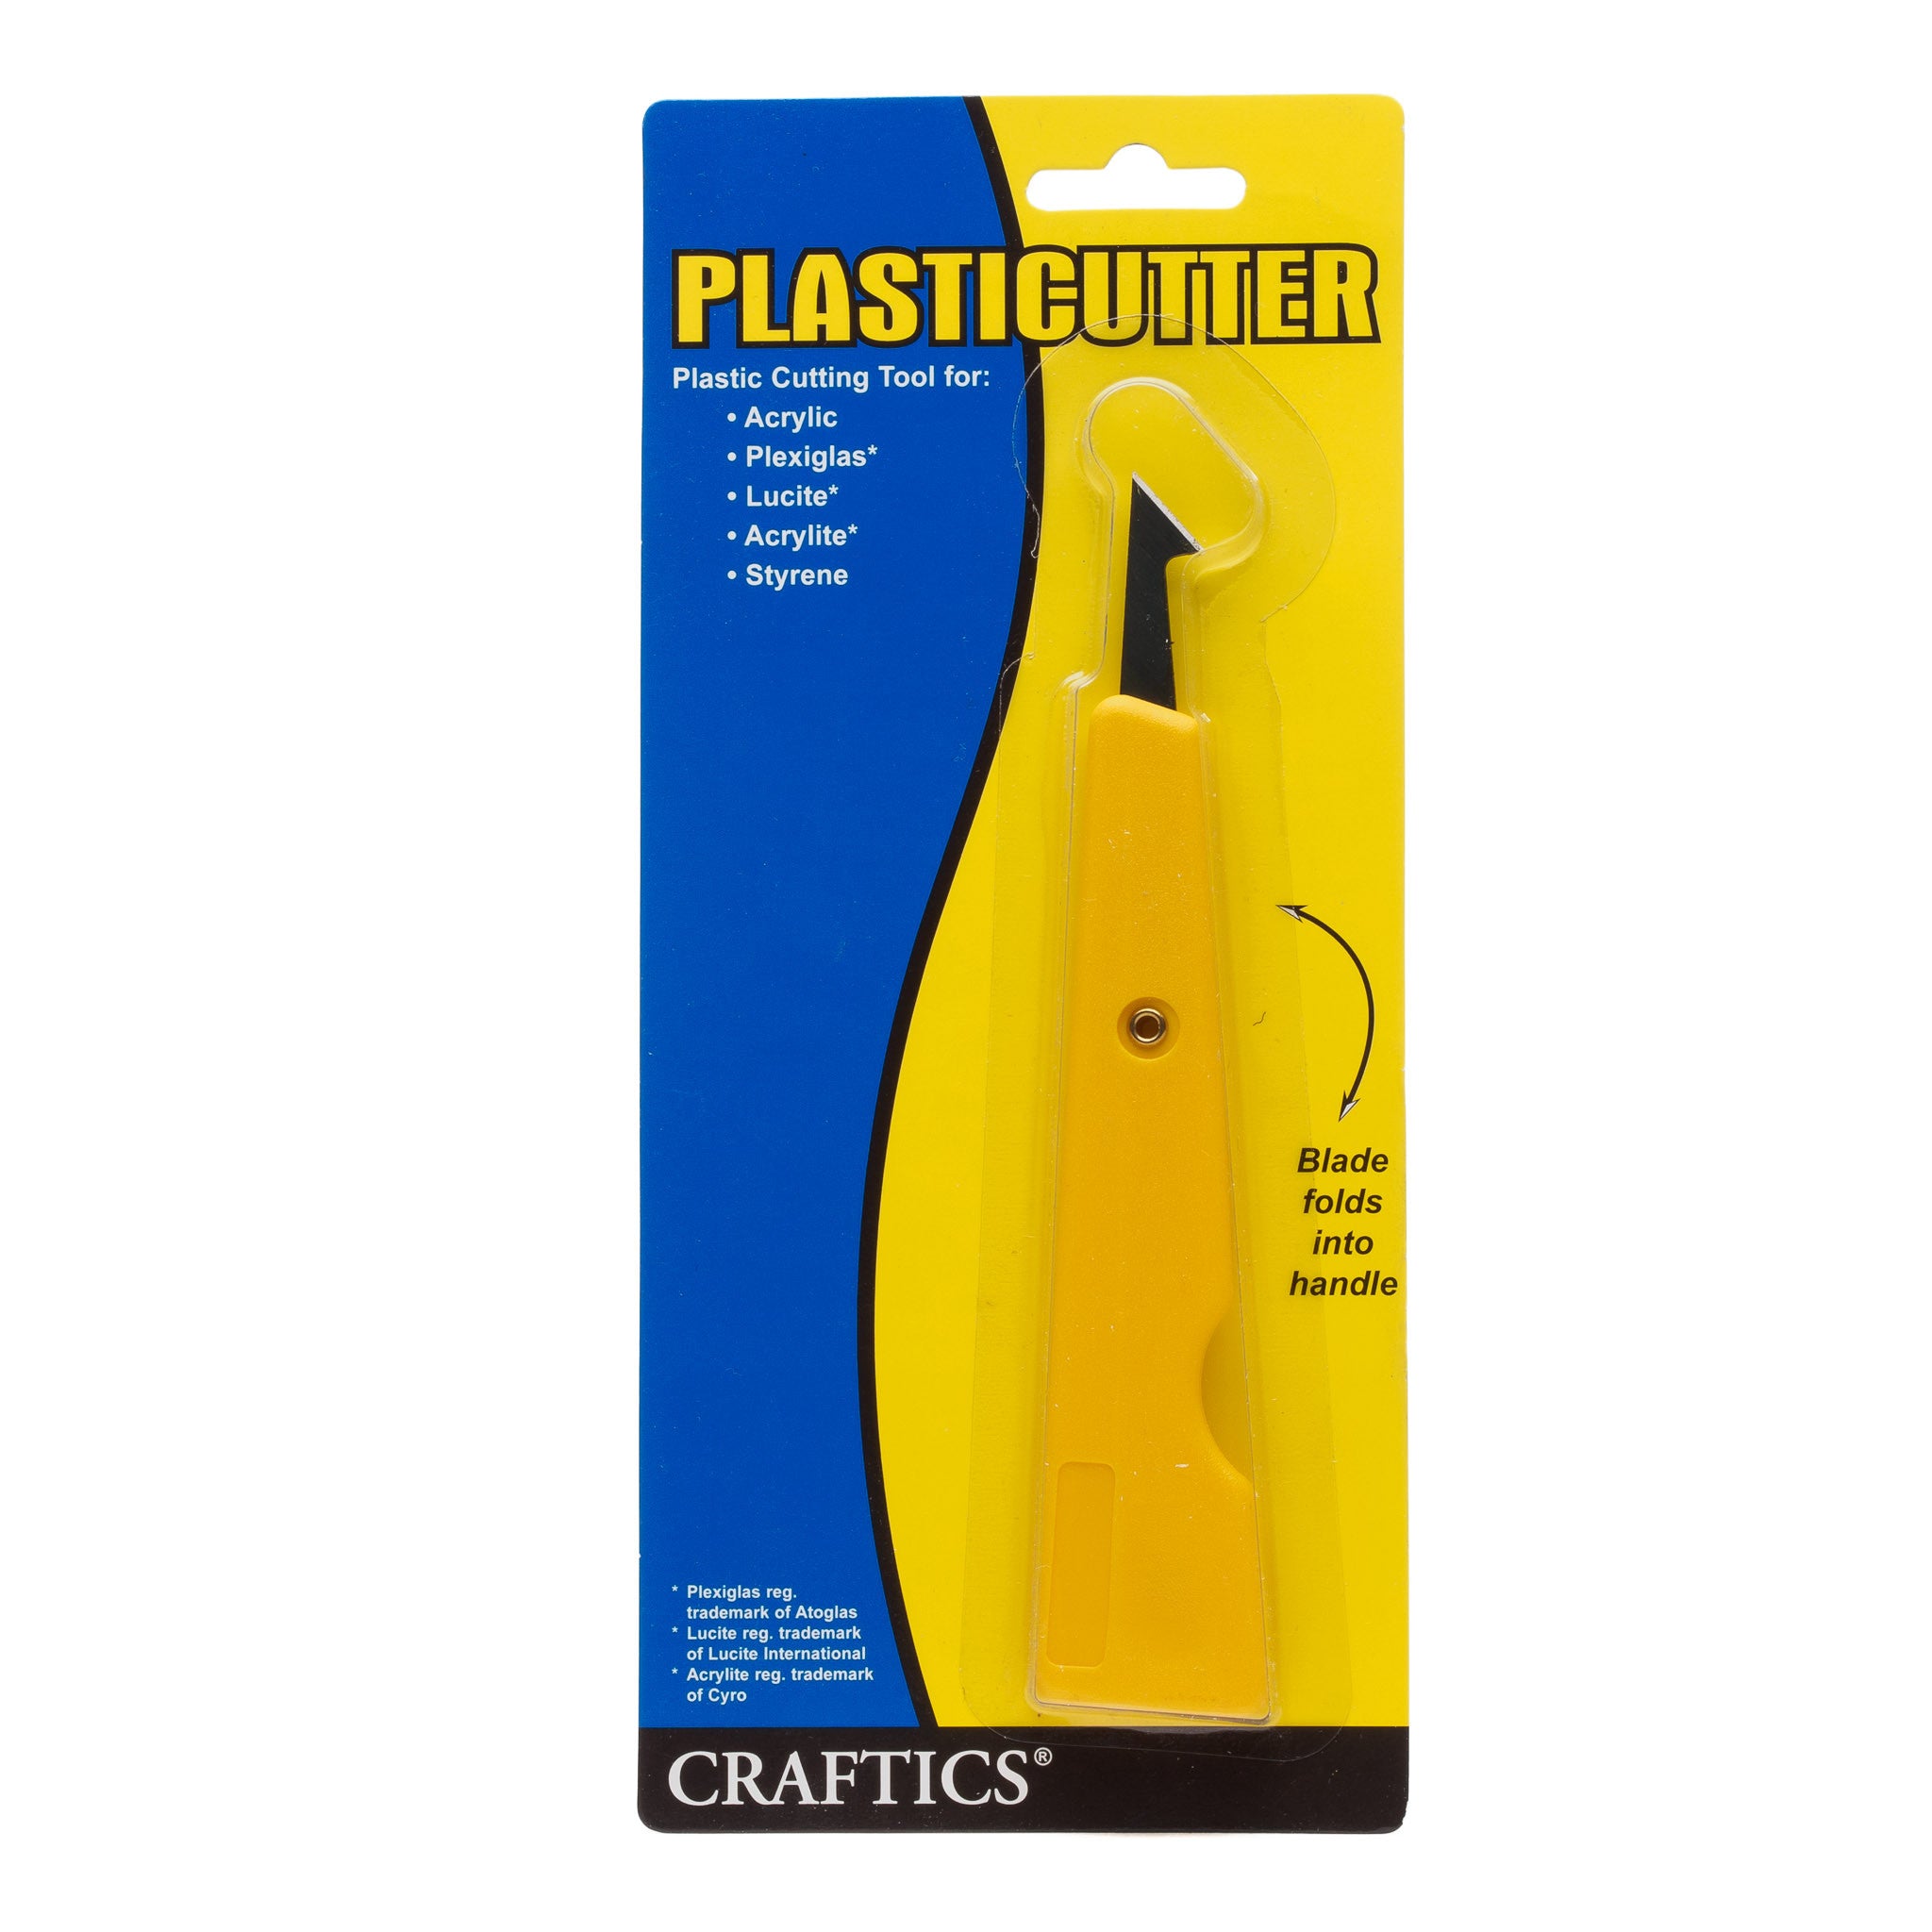 Craftics Plasticutter